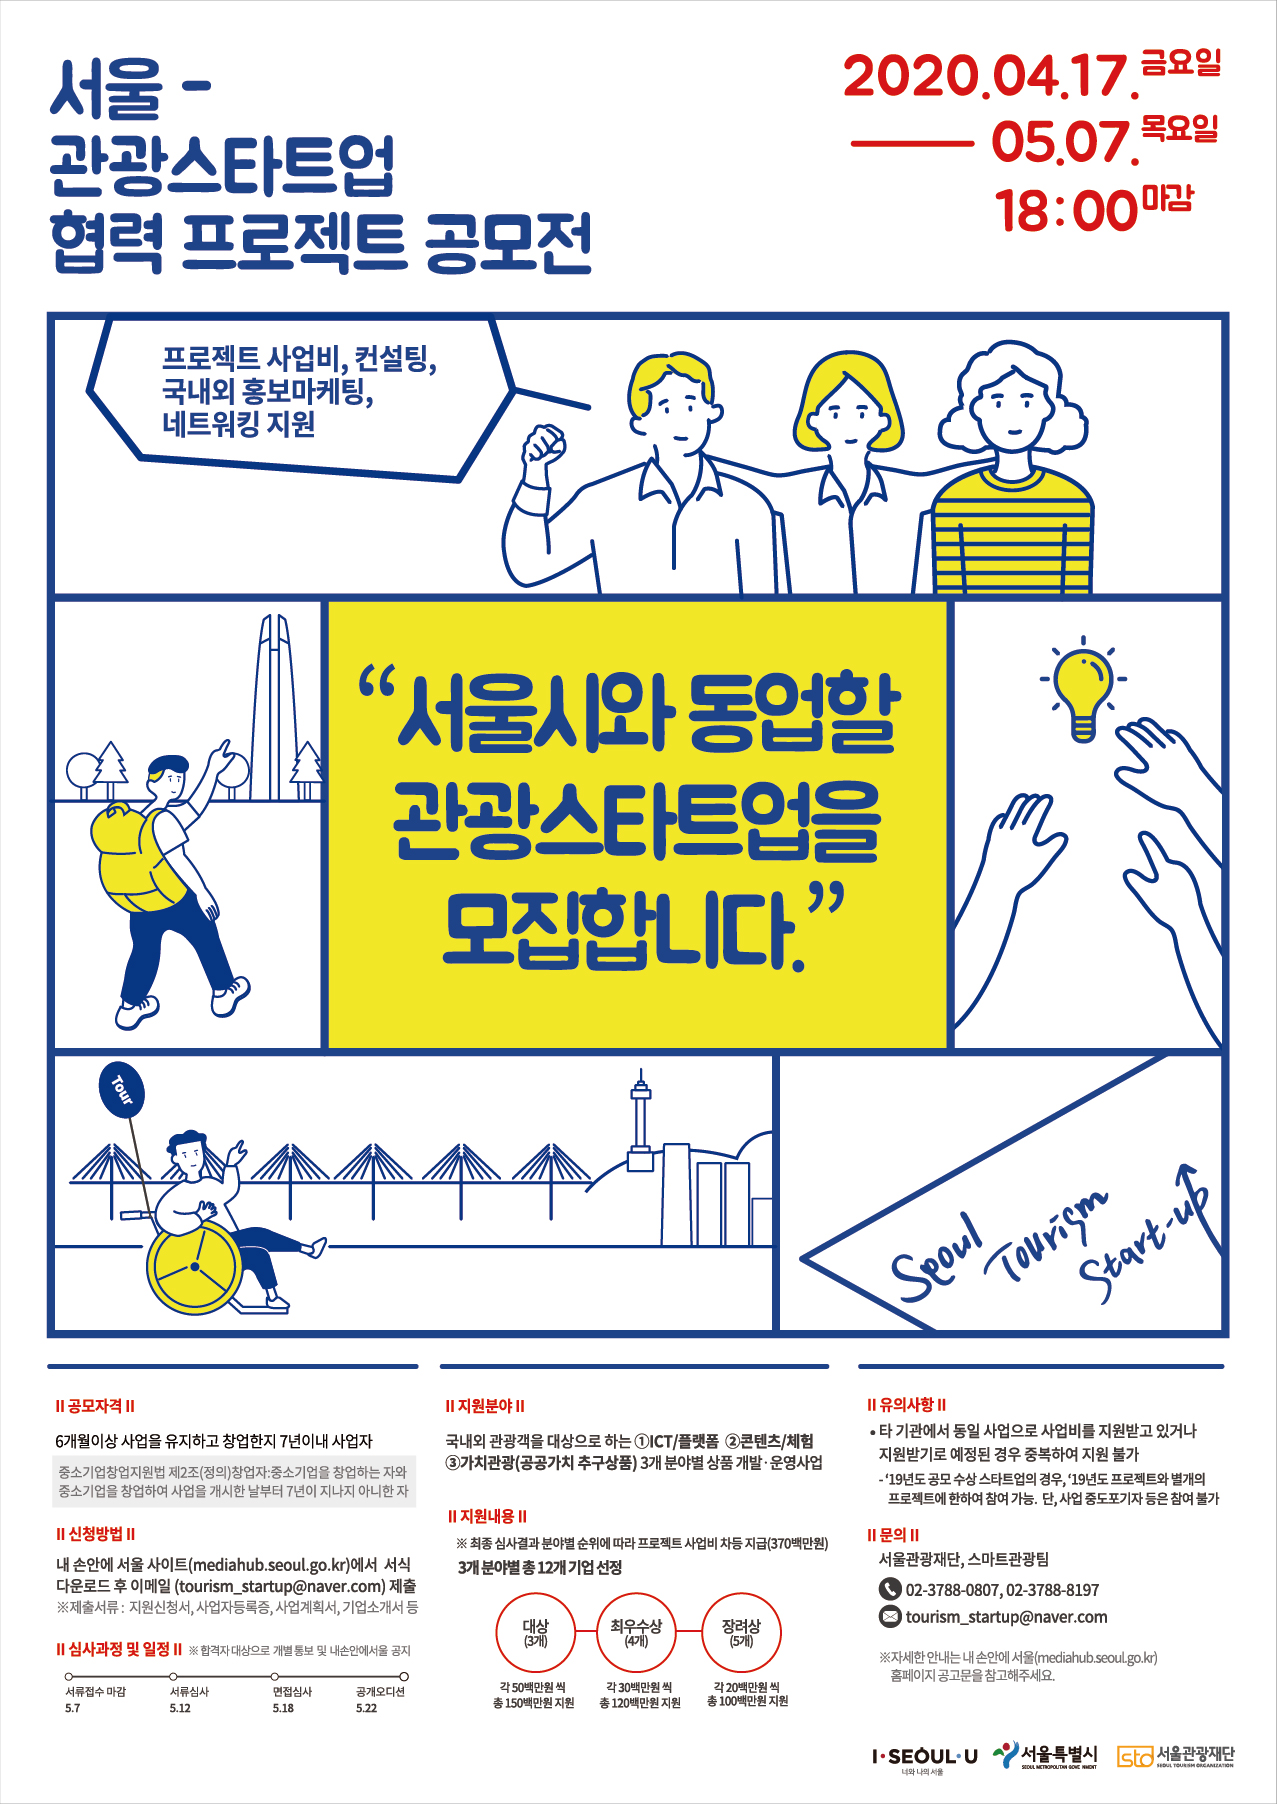 서울 관광 스타트업 협력 프로젝트 공모전